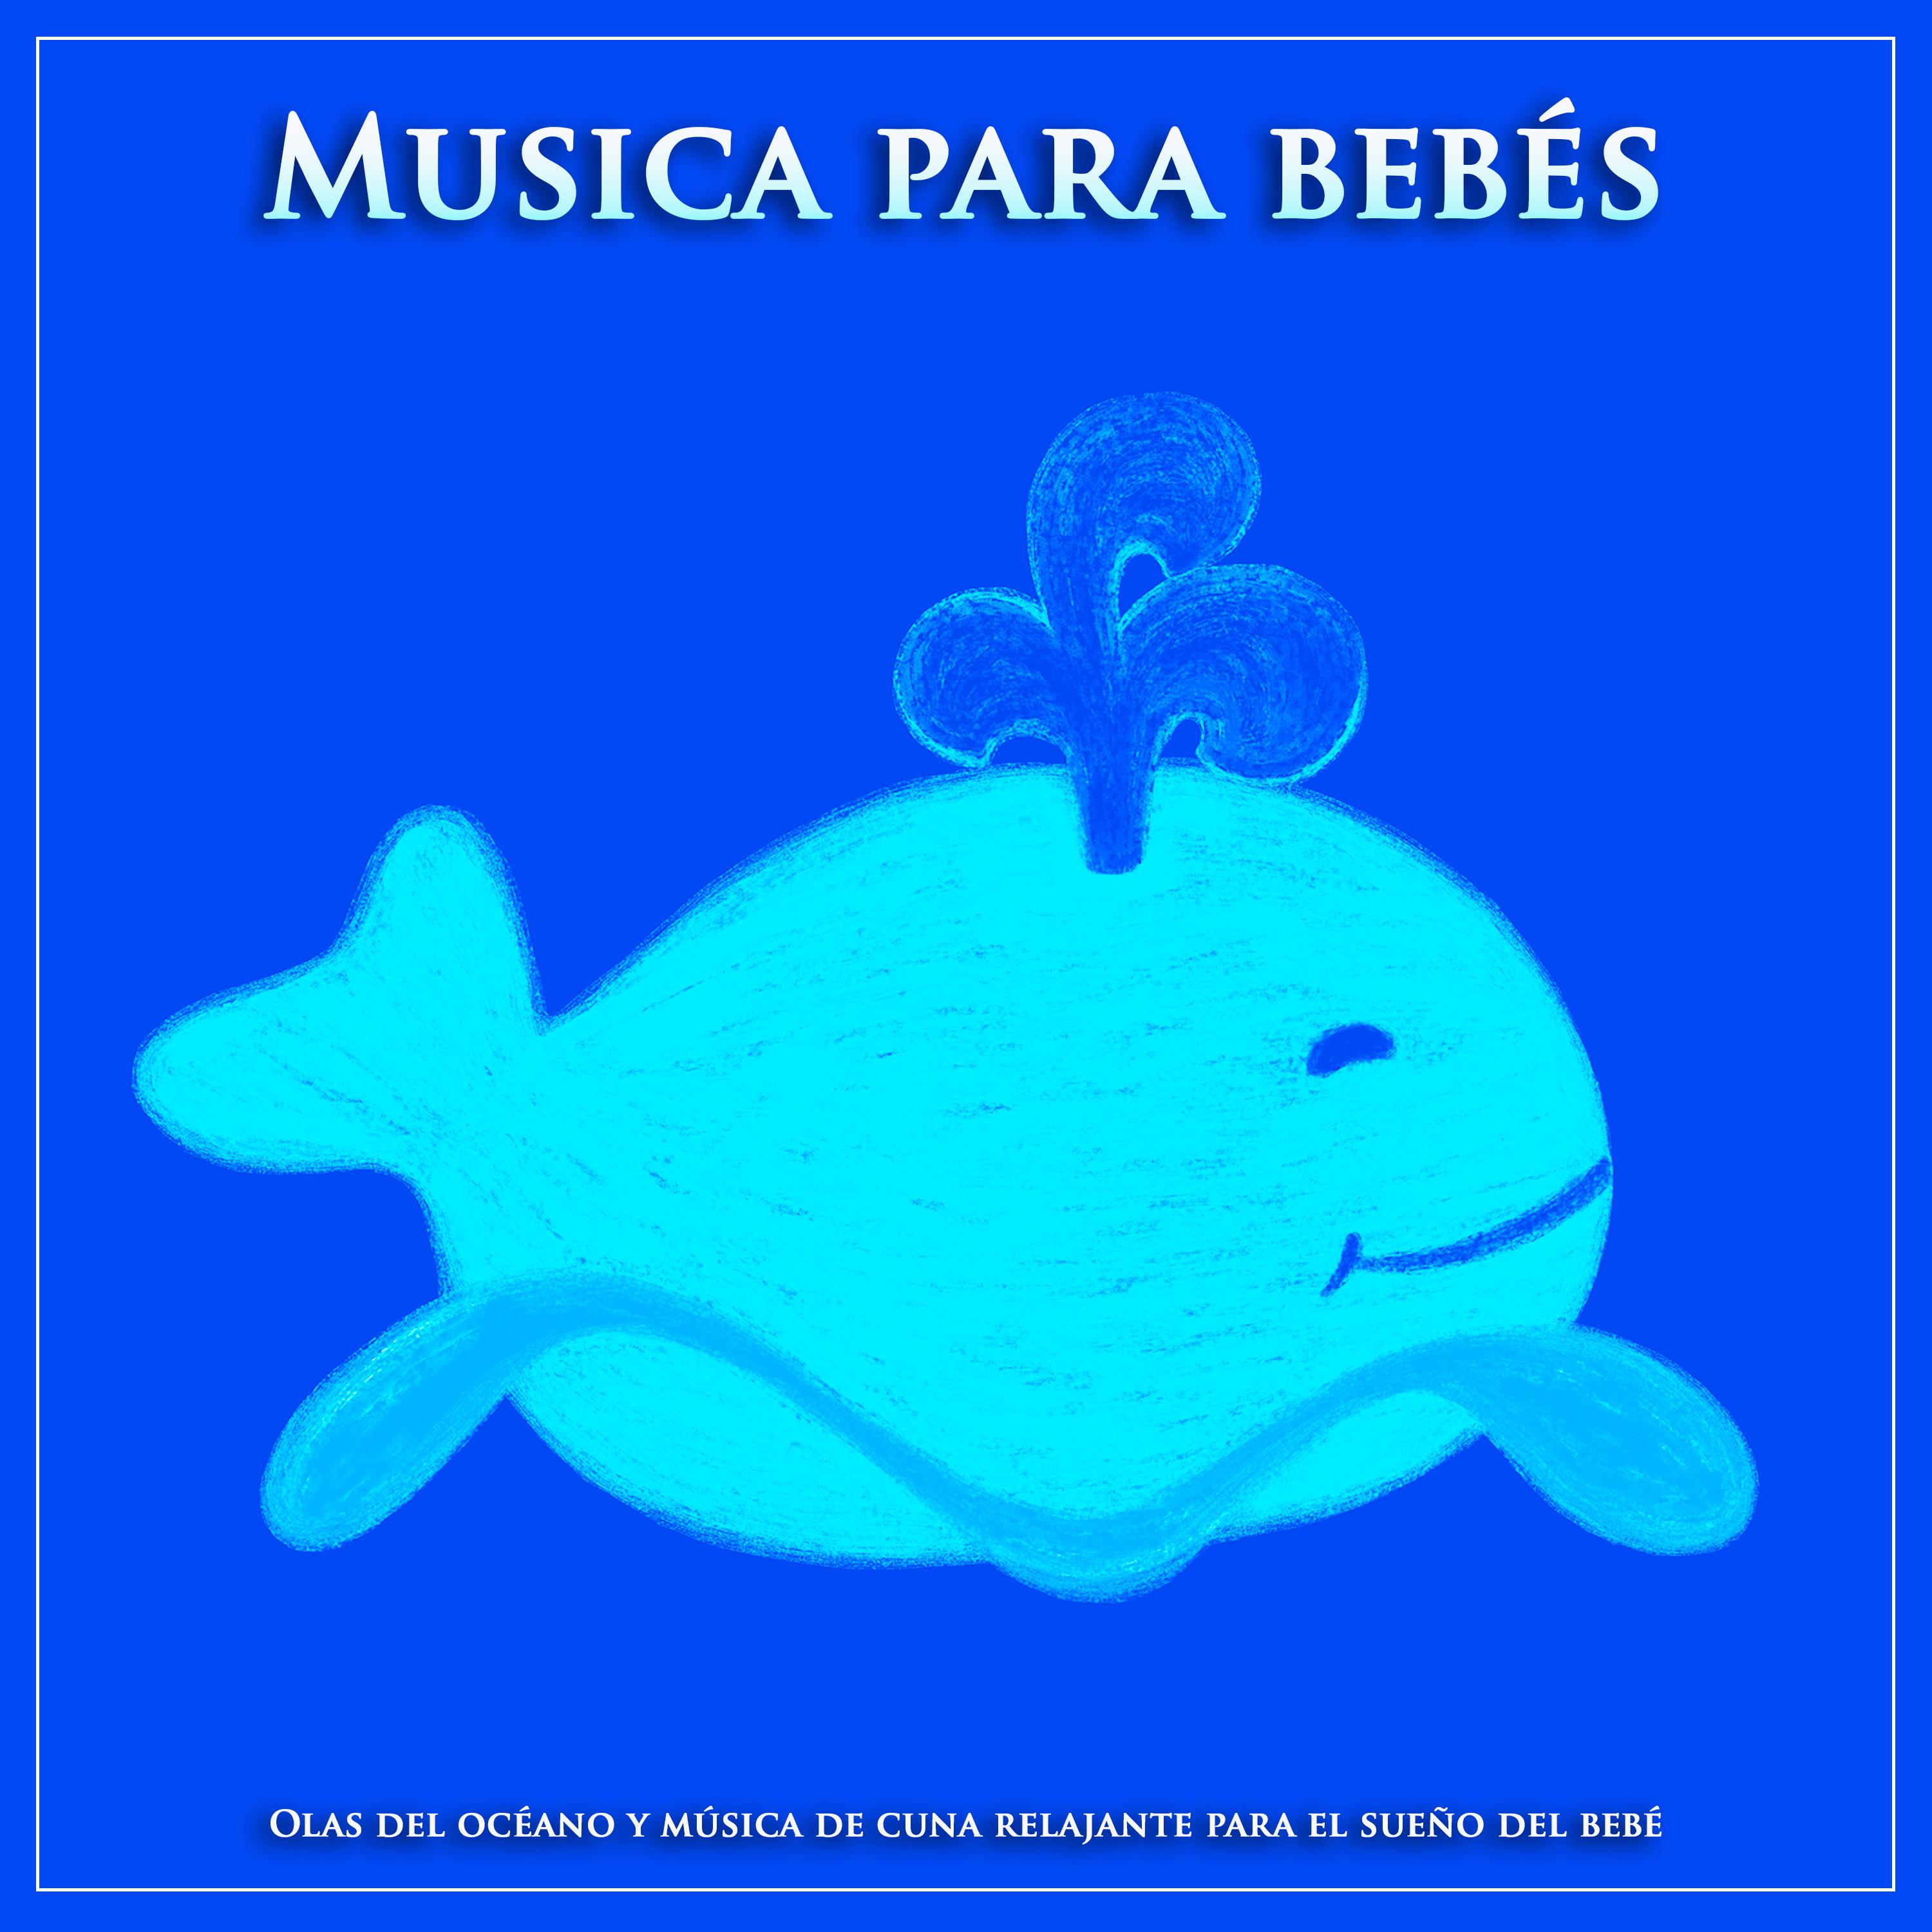 Canciones de cuna para bebés - Klaviersonate KV-545 - Mozart - Musica para bebés - Piano clásico y sonidos de las olas del océano